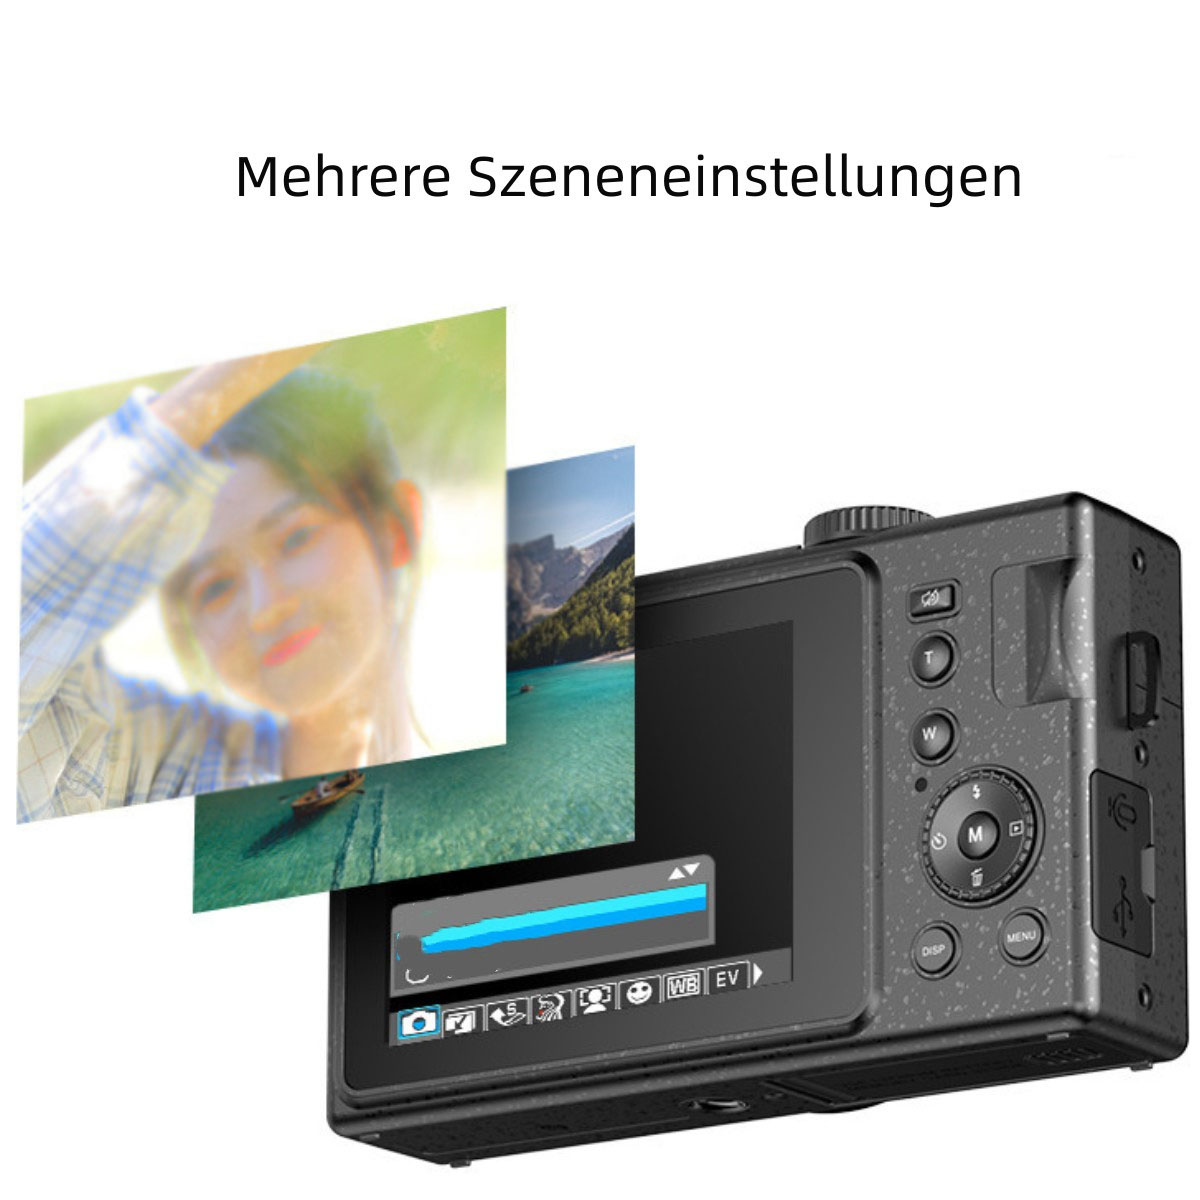 High-Definition-Digitalkamera auf blau- Gesichtserkennung mit Digitalkamera - Knopfdruck, SYNTEK Stummschaltung